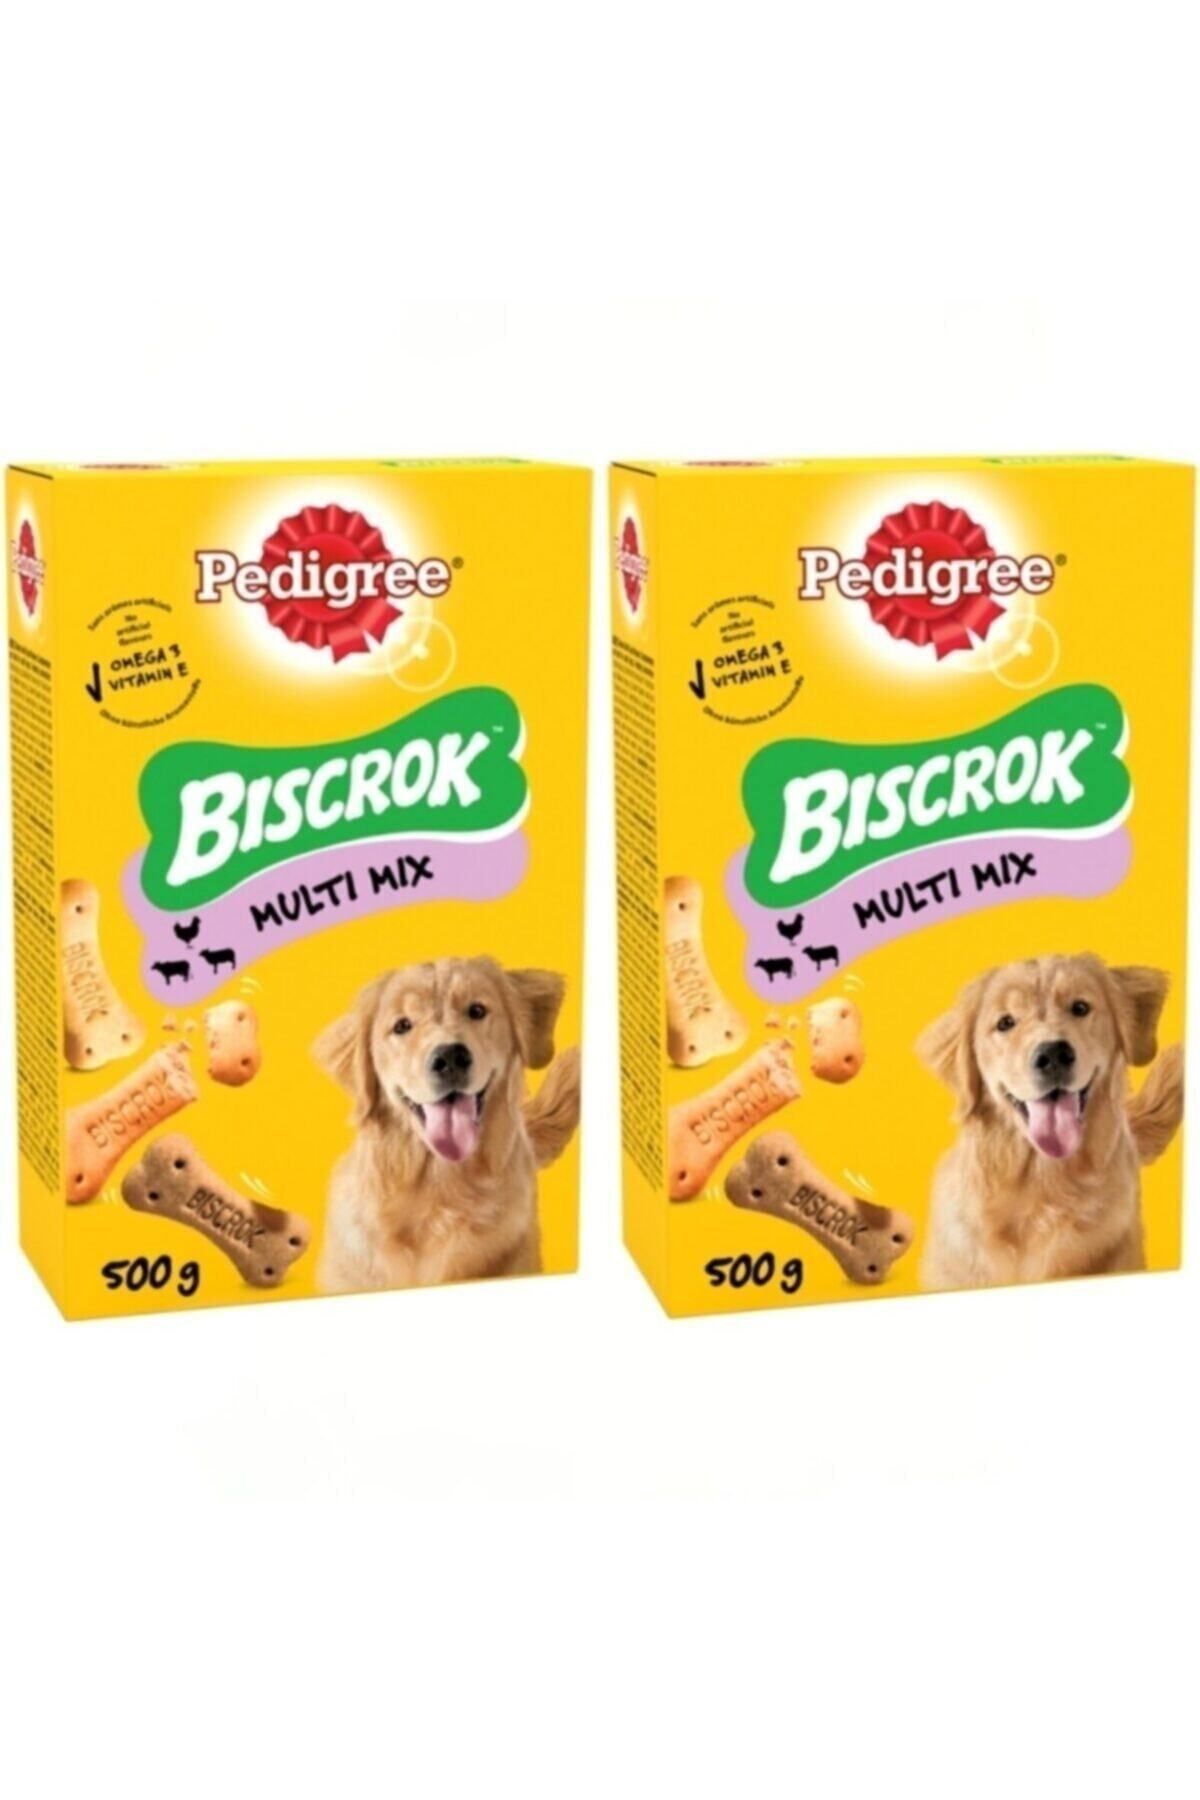 Pedigree Biscrok Multi Mix Köpek Ödül Bisküvisi 500gr X 2 Adet